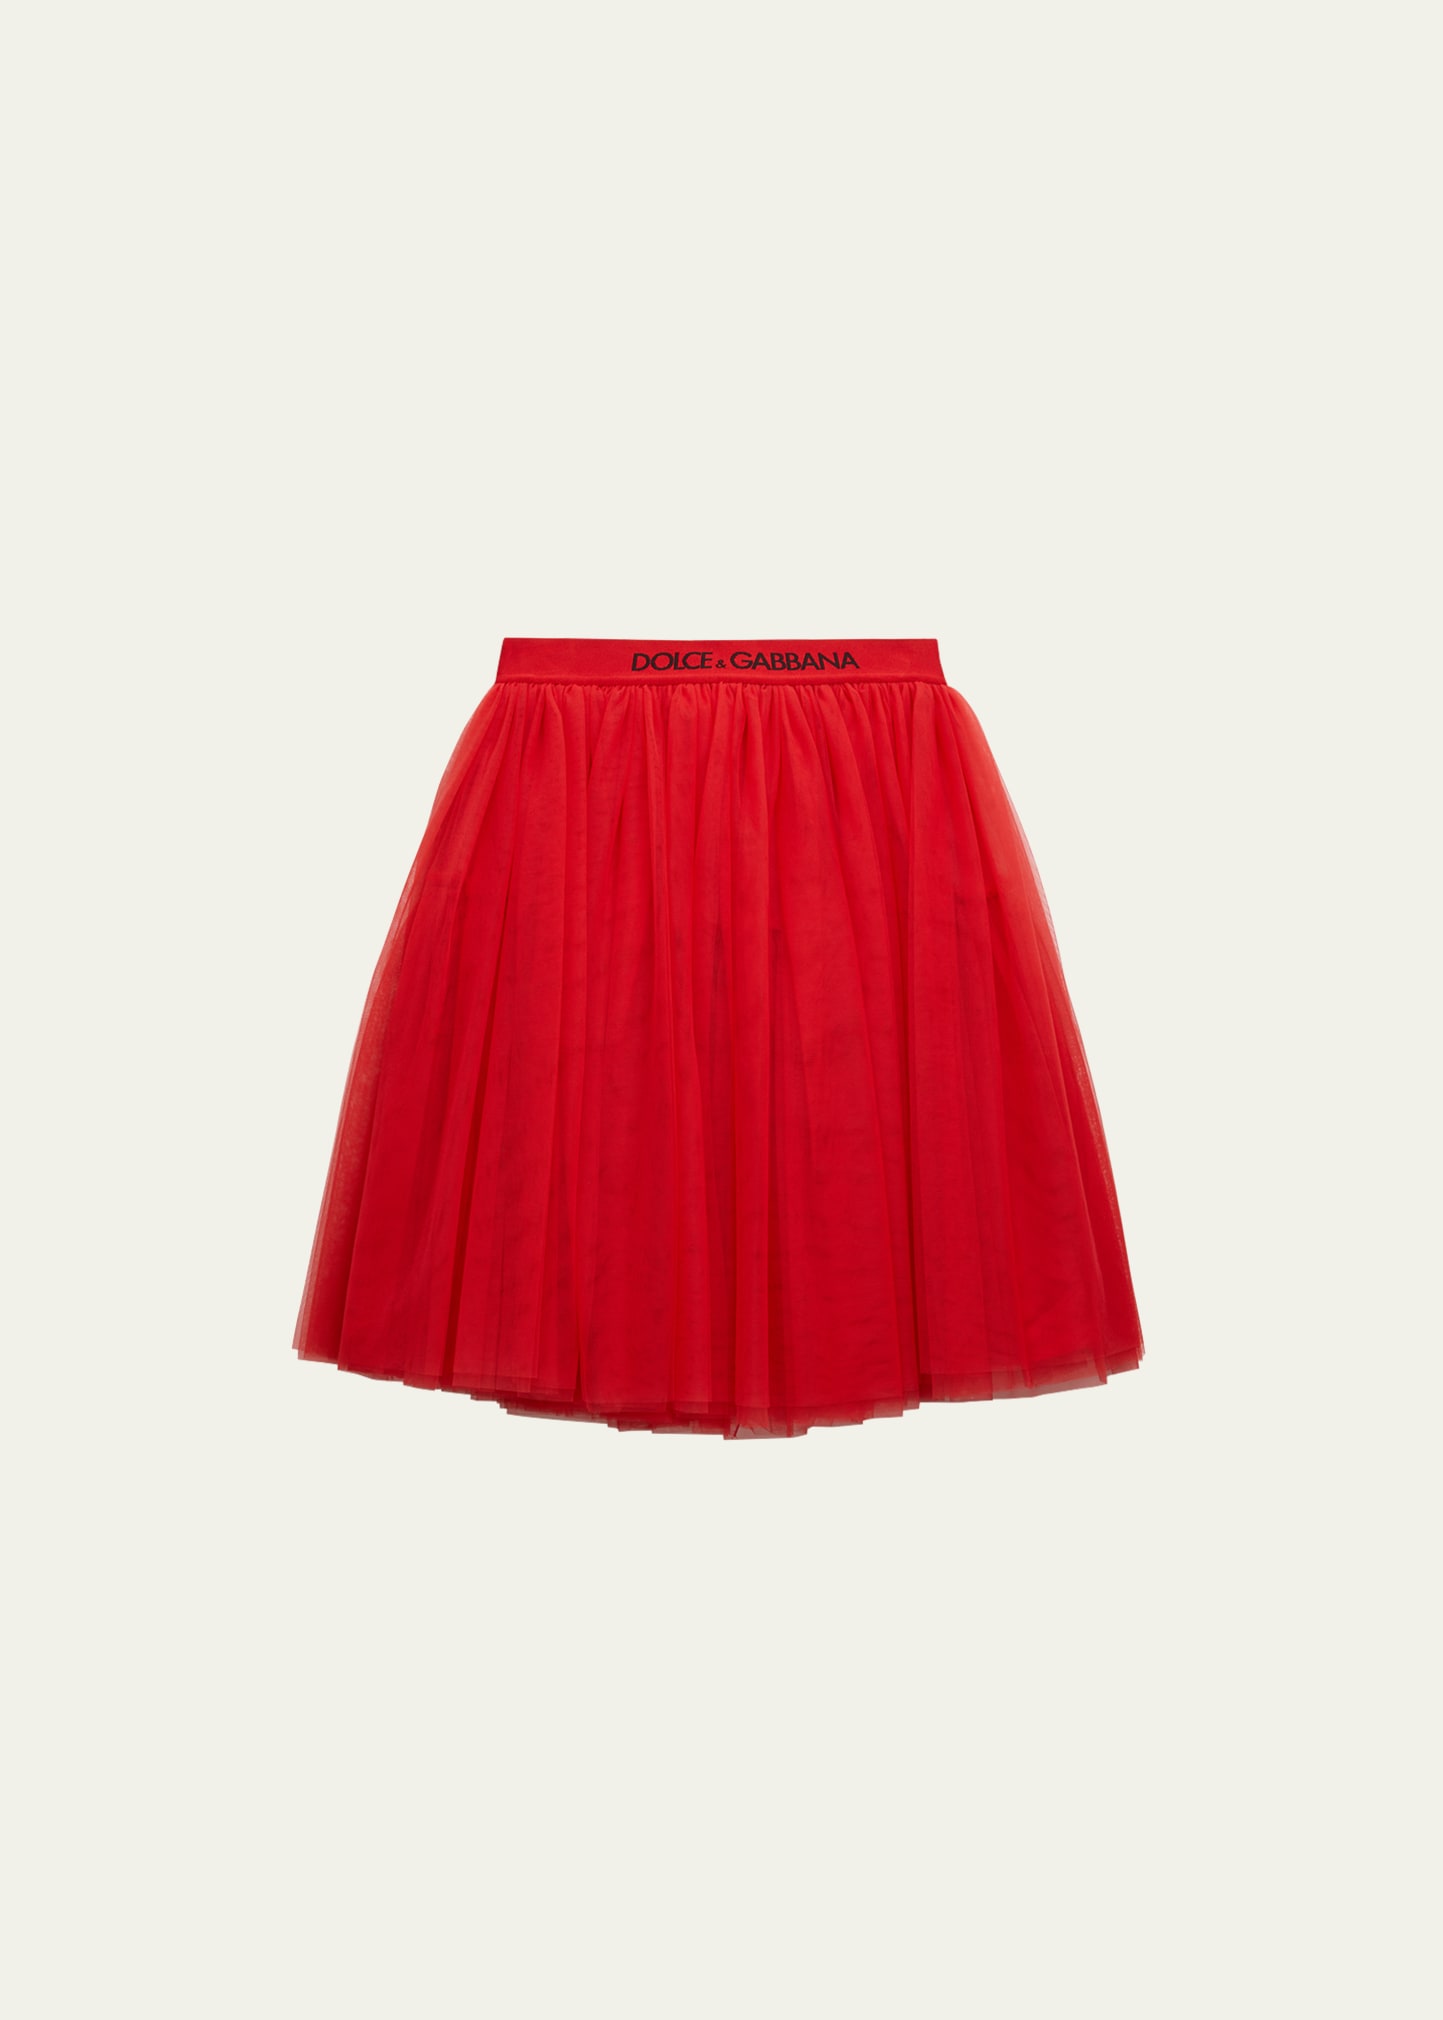 Dolce & Gabbana Kids' Girl's Logo-tape Waist Tulle Skirt In Brt Red